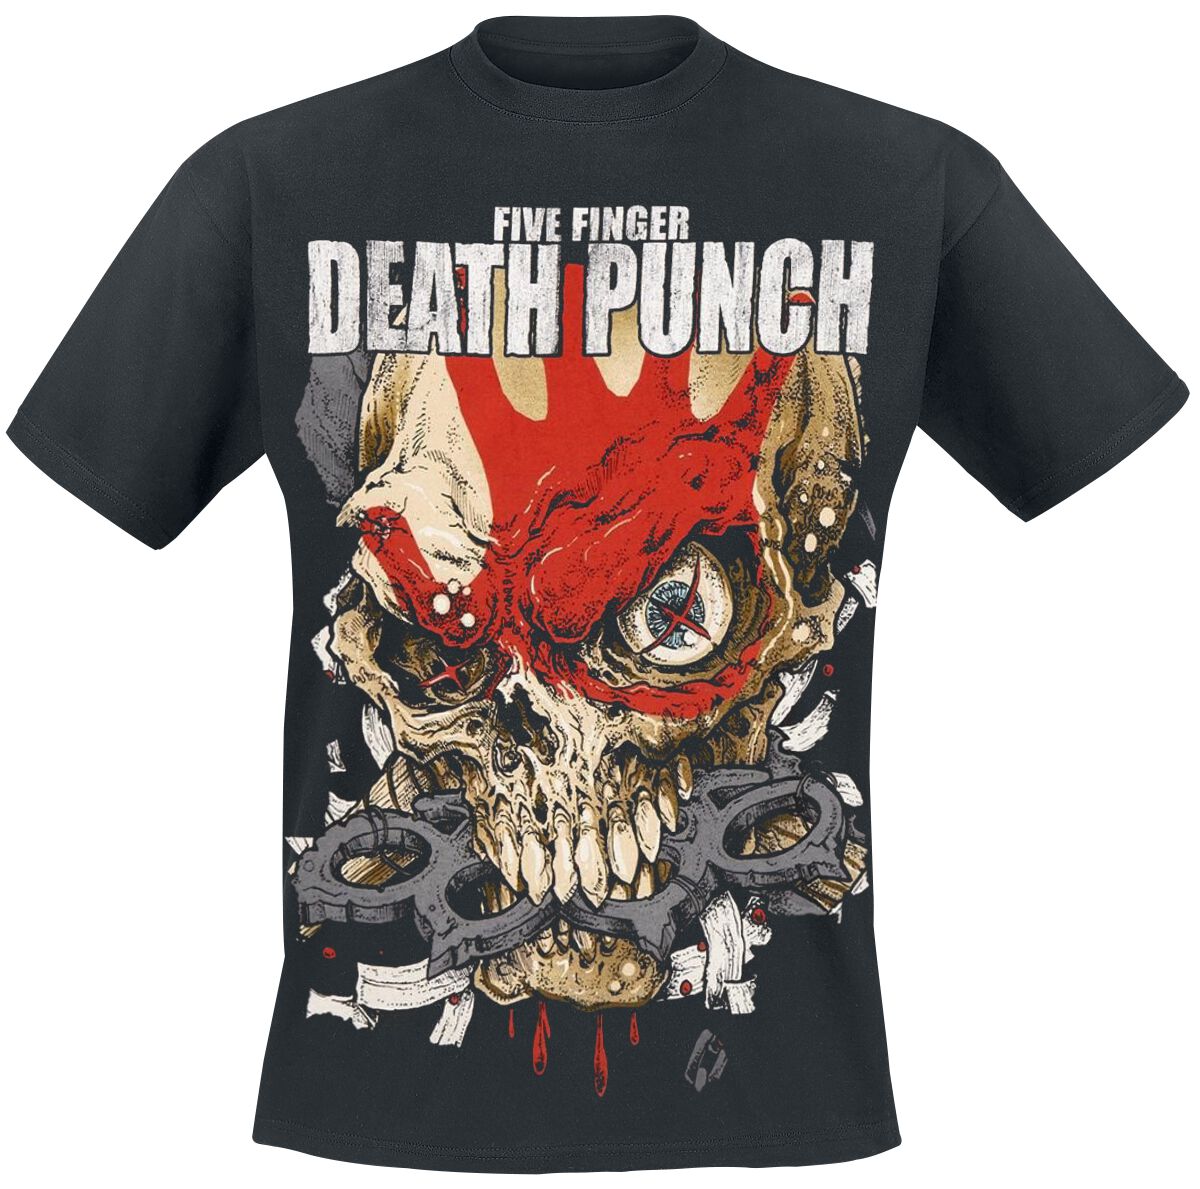 Five Finger Death Punch T-Shirt - Knucklehead Kopia Exploded - S bis XXL - für Männer - Größe L - schwarz  - Lizenziertes Merchandise!